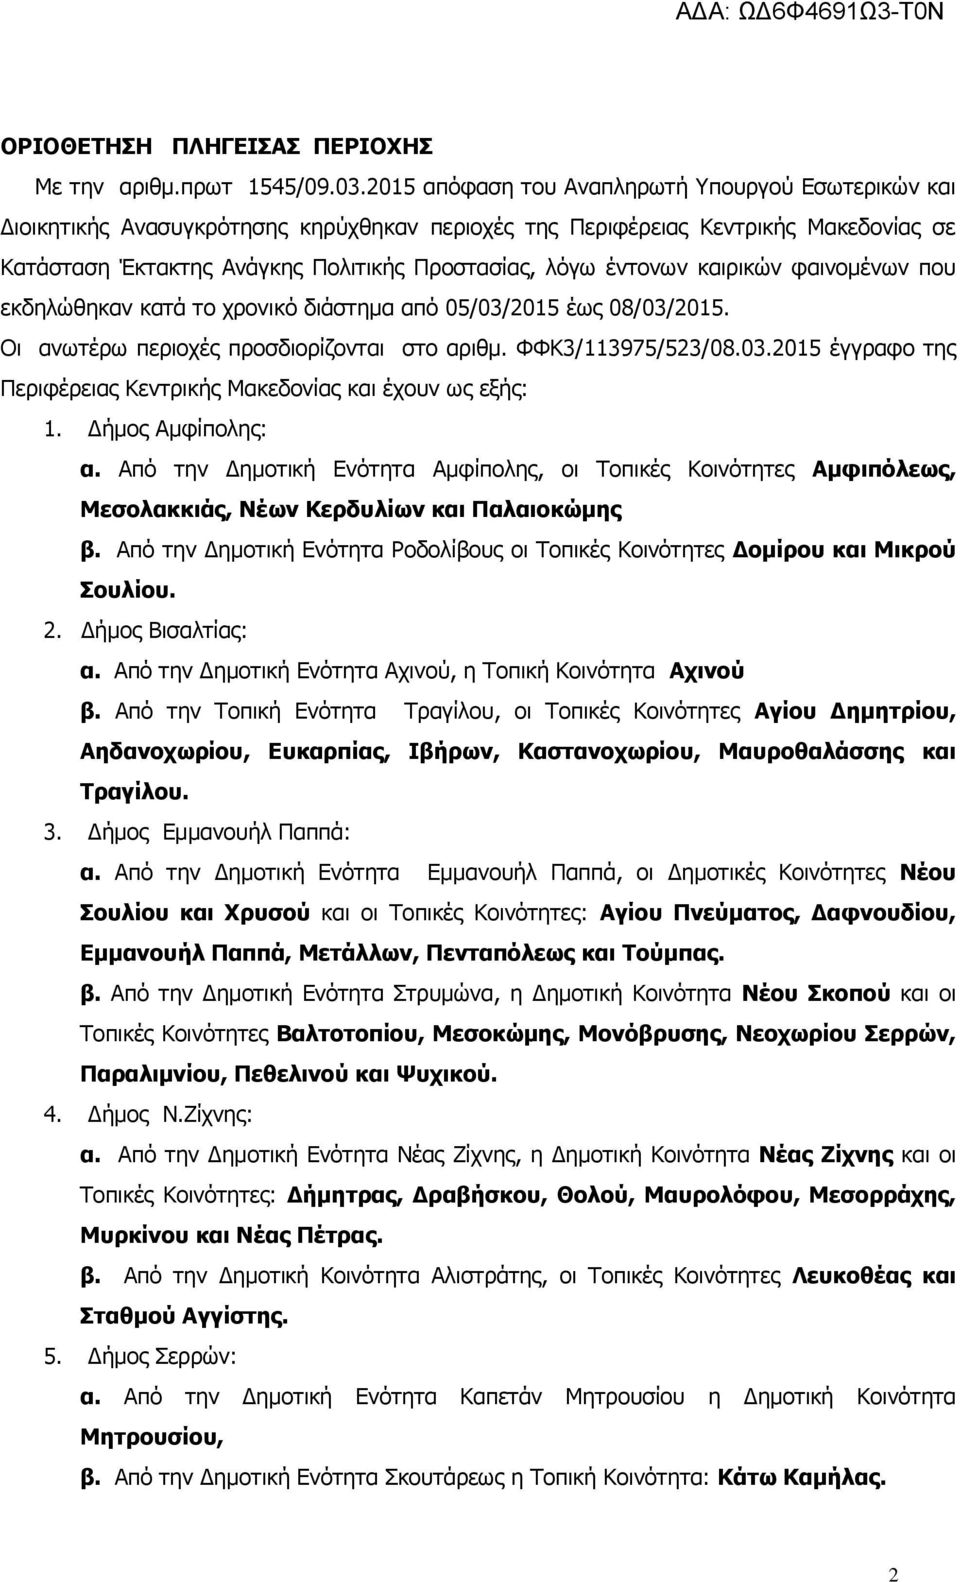 έντονων καιρικών φαινομένων που εκδηλώθηκαν κατά το χρονικό διάστημα από 05/03/2015 έως 08/03/2015. Οι ανωτέρω περιοχές προσδιορίζονται στο αριθμ. ΦΦΚ3/113975/523/08.03.2015 έγγραφο της Περιφέρειας Κεντρικής Μακεδονίας και έχουν ως εξής: 1.